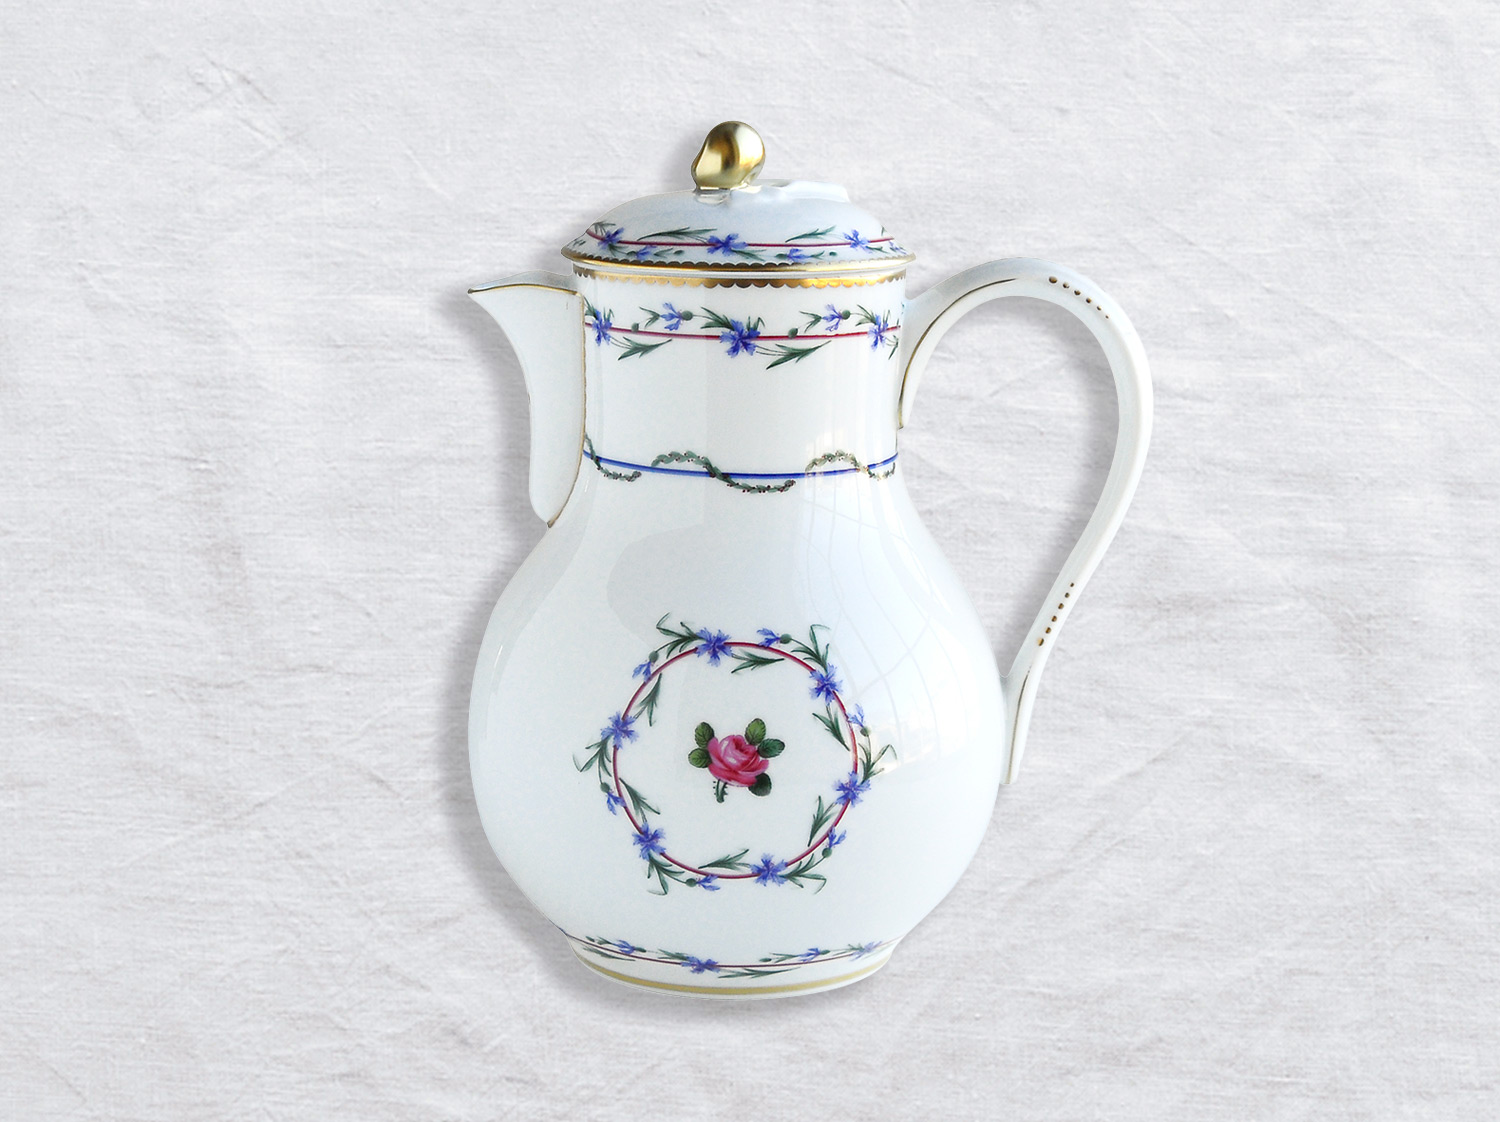 Verseuse haute (cafetière) 1,1 L en porcelaine de la collection Gobelet du roy Bernardaud